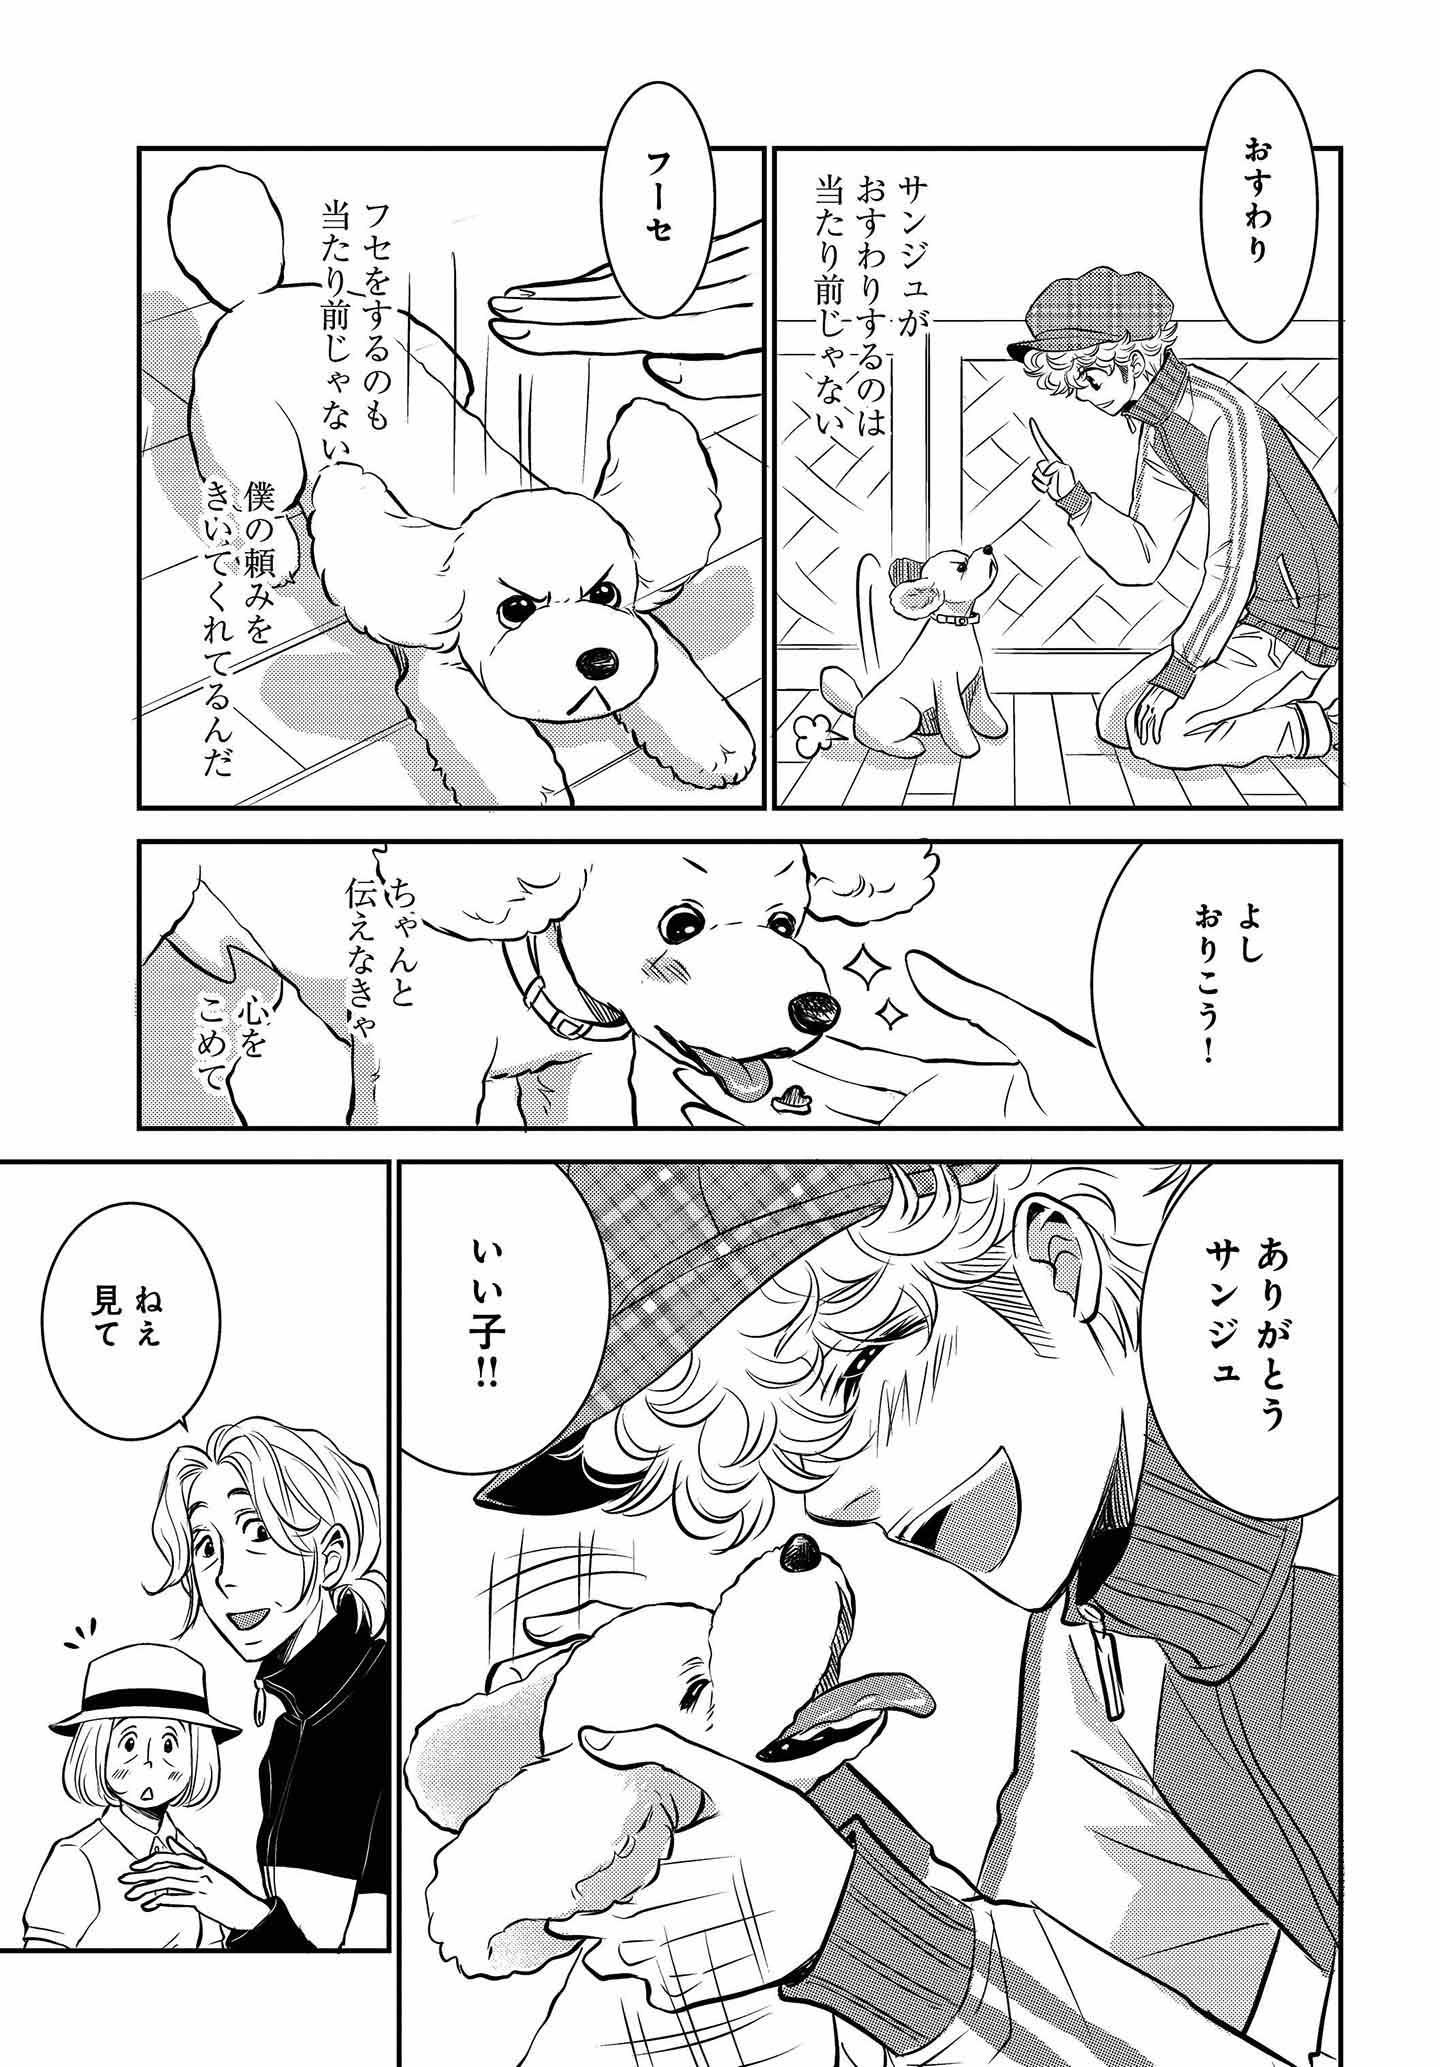 ドッグトレーニング漫画『DOG SIGNAL』29話目　みやうち沙矢